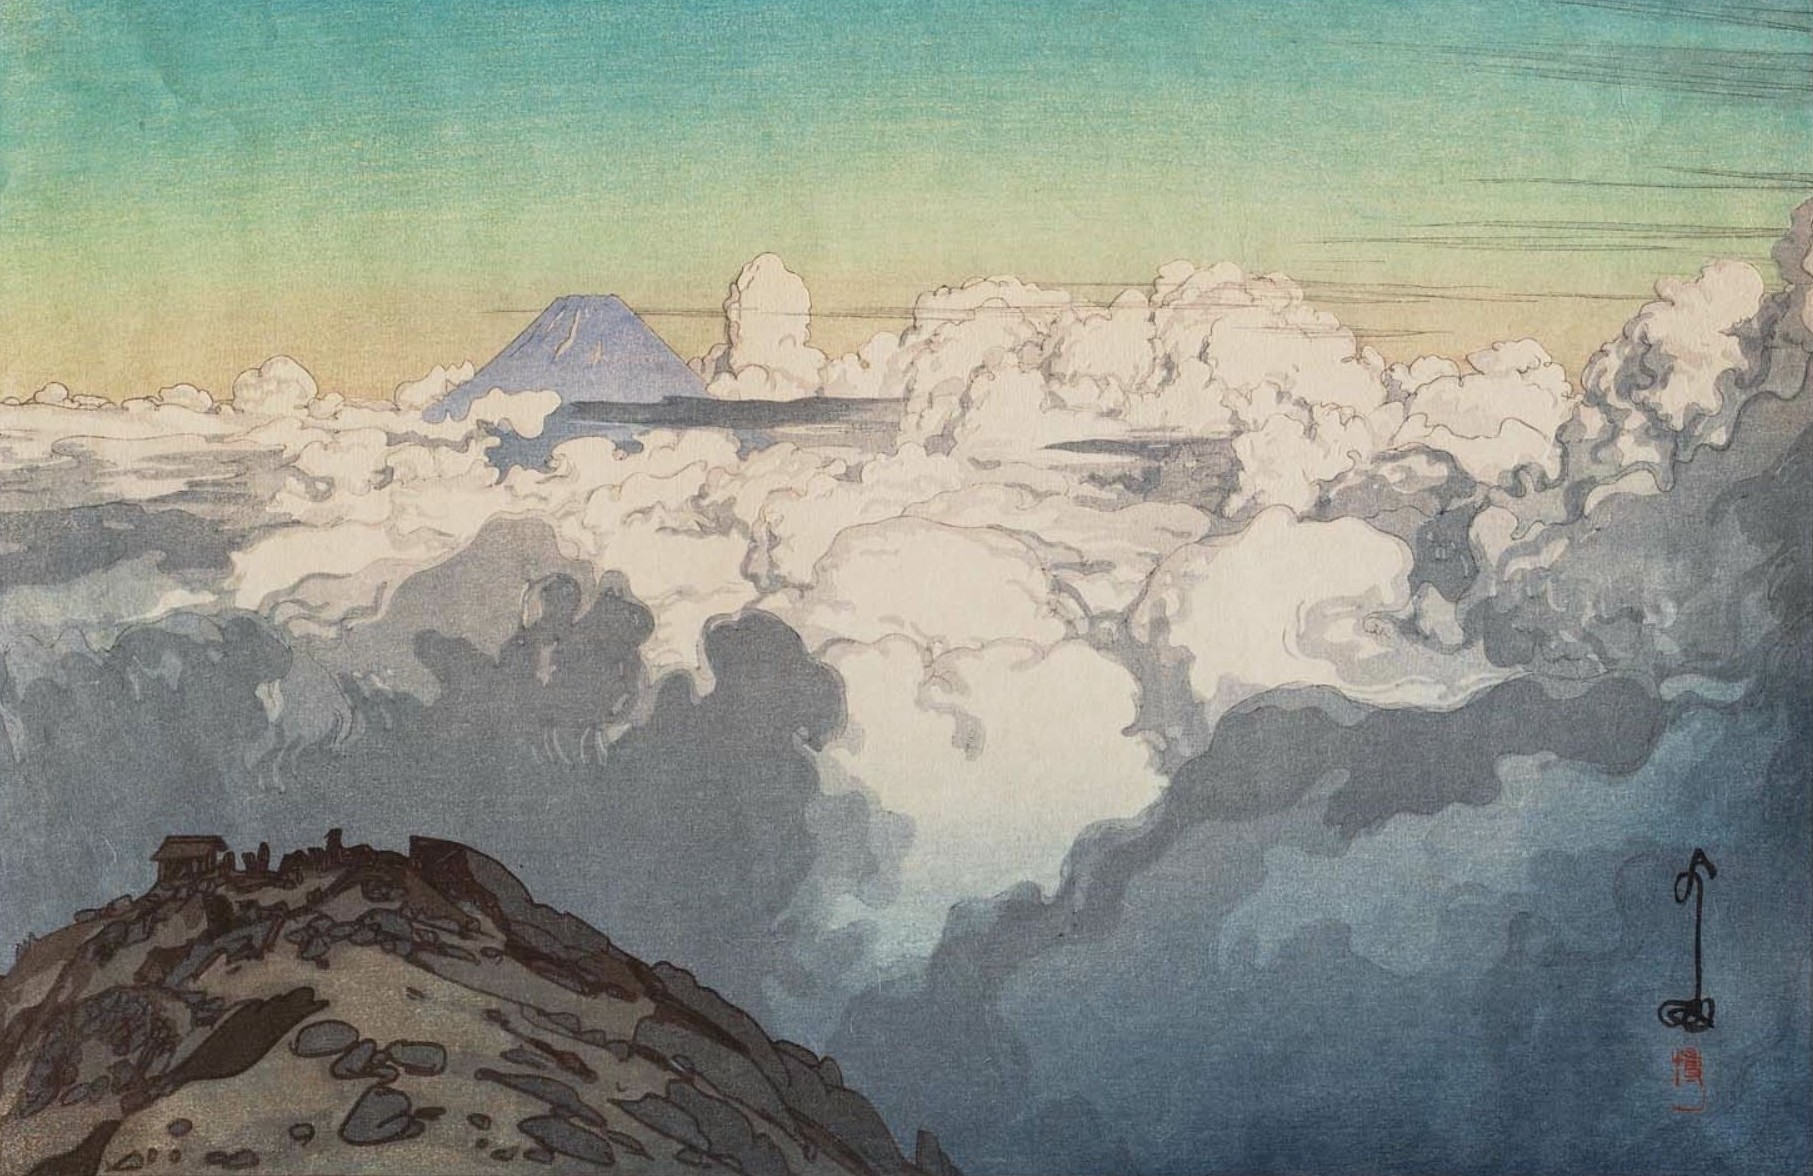 General 1813x1176 Yoshida Hiroshi artwork Japanese painting mountains clouds